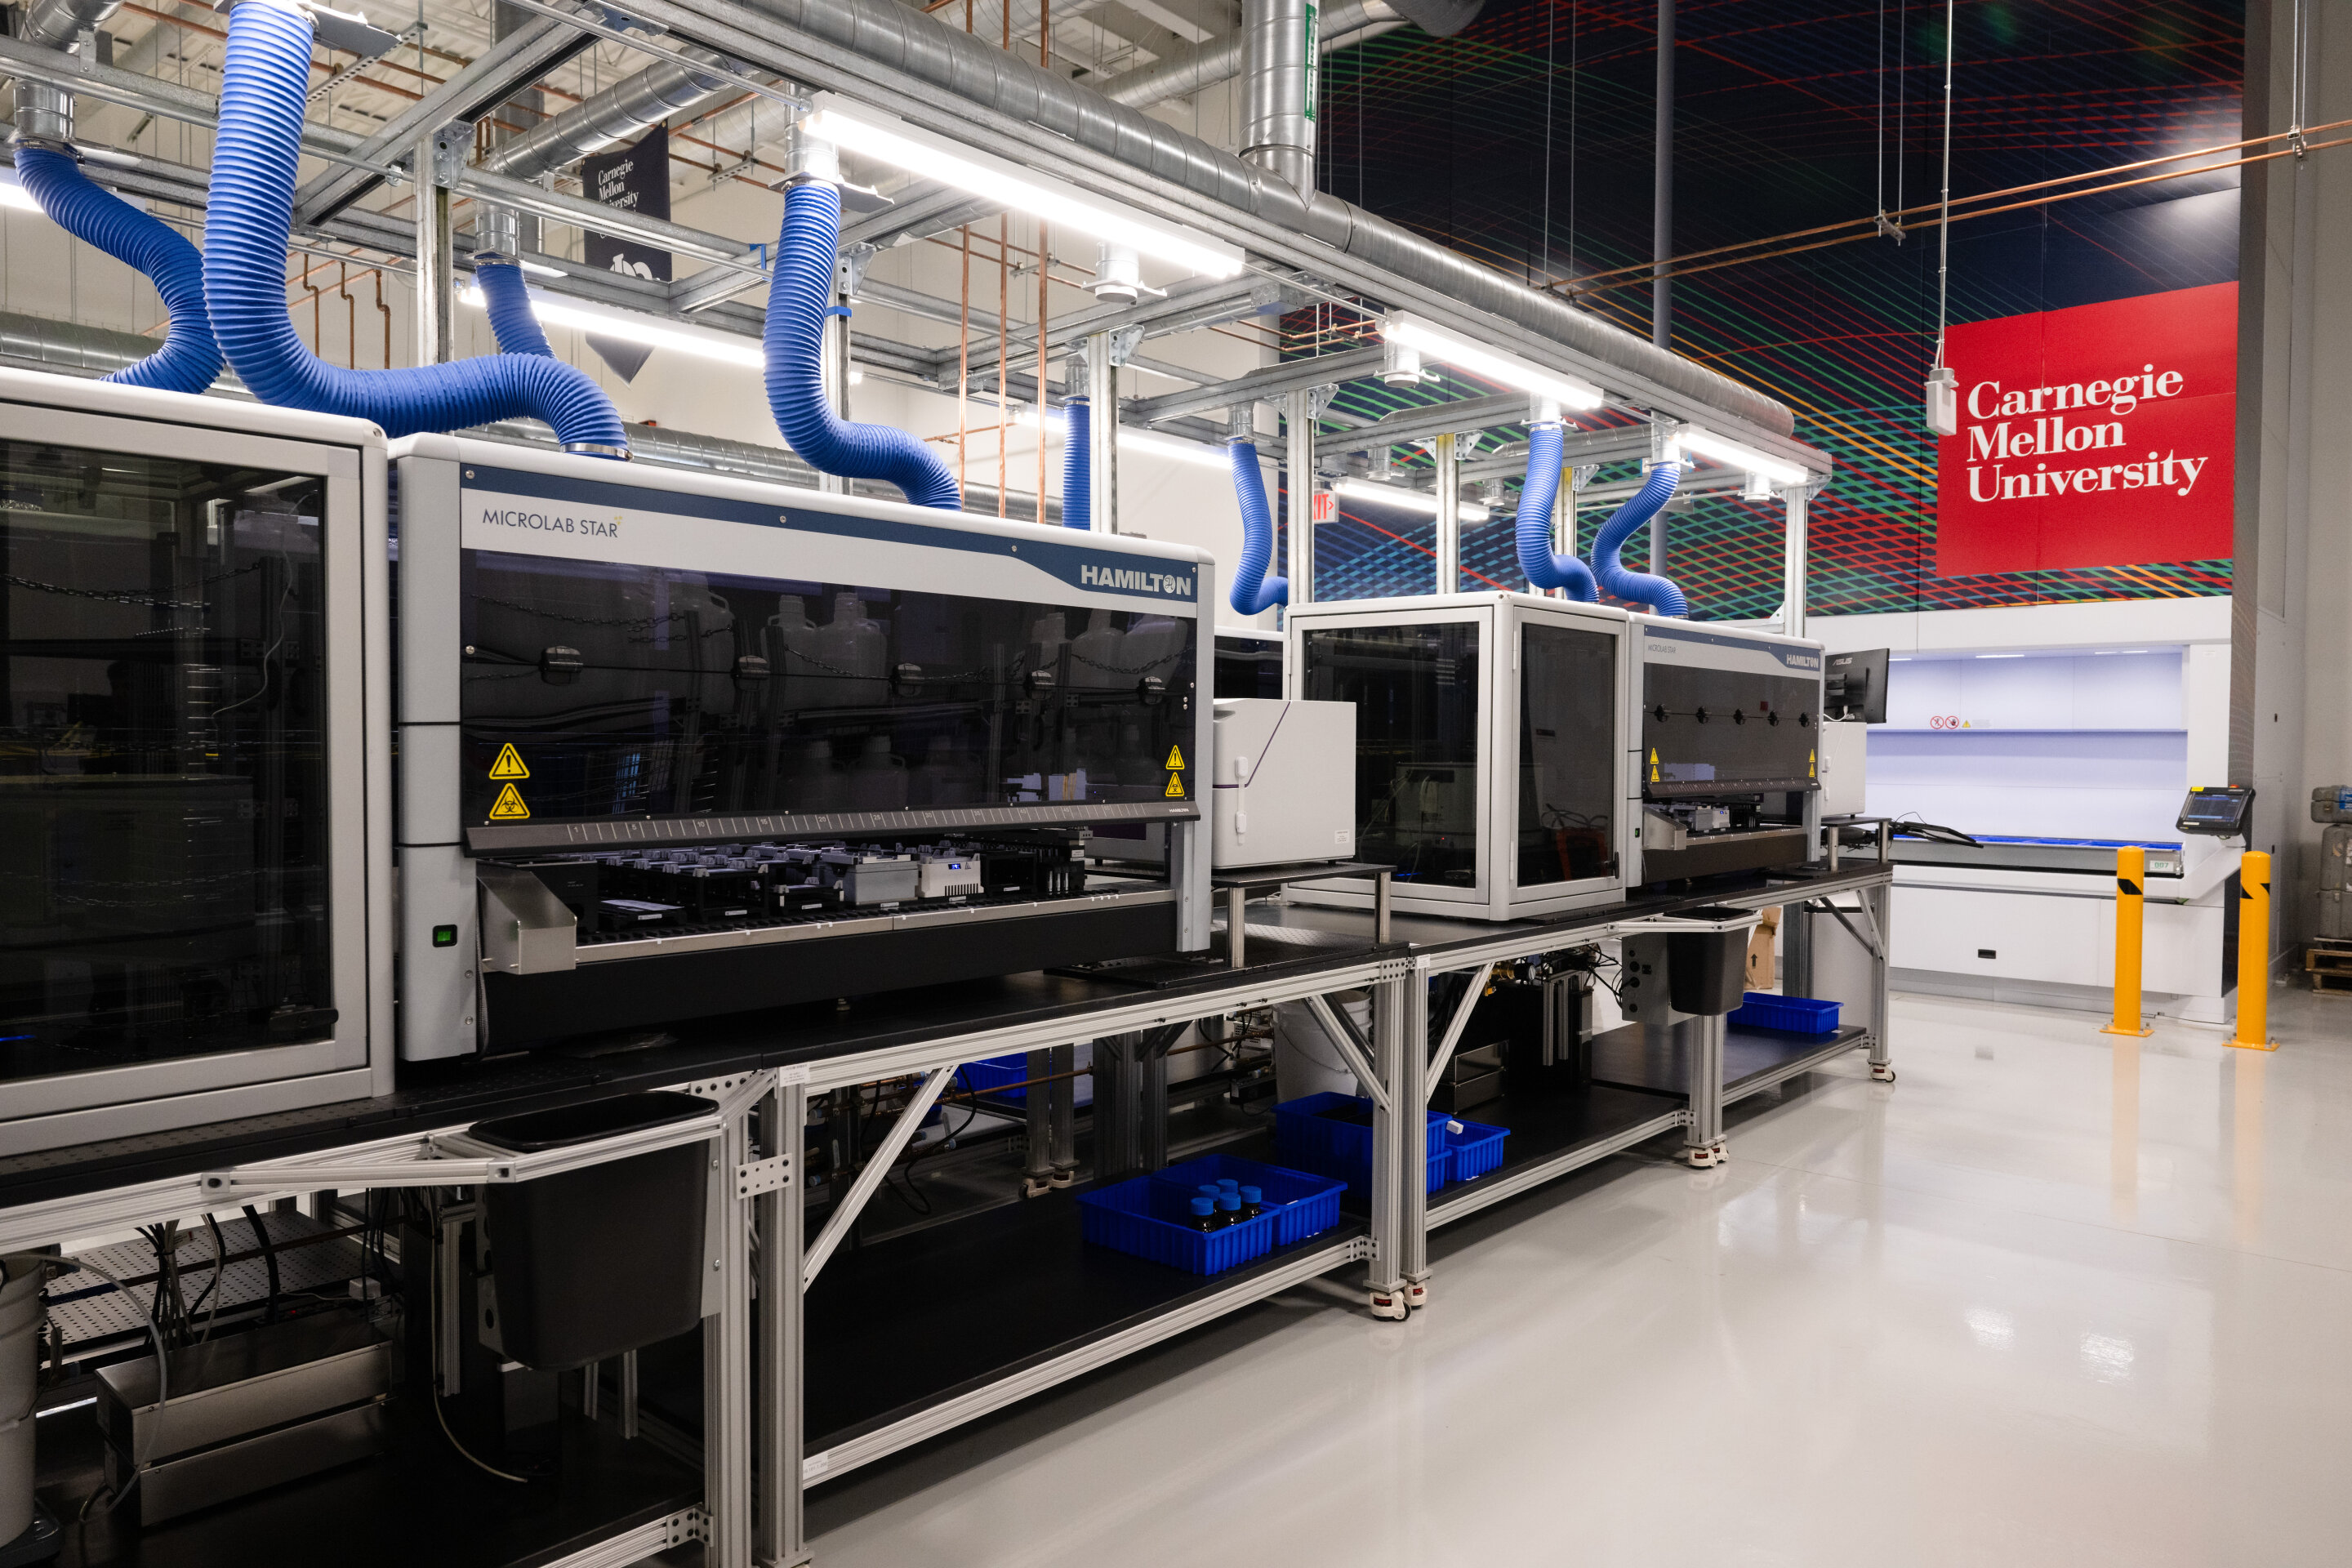 Облачная лаборатория Университета Карнеги-Меллона — это автоматизированная лаборатория с дистанционным управлением, предоставляющая исследователям доступ к более чем 200 единицам научного оборудования.